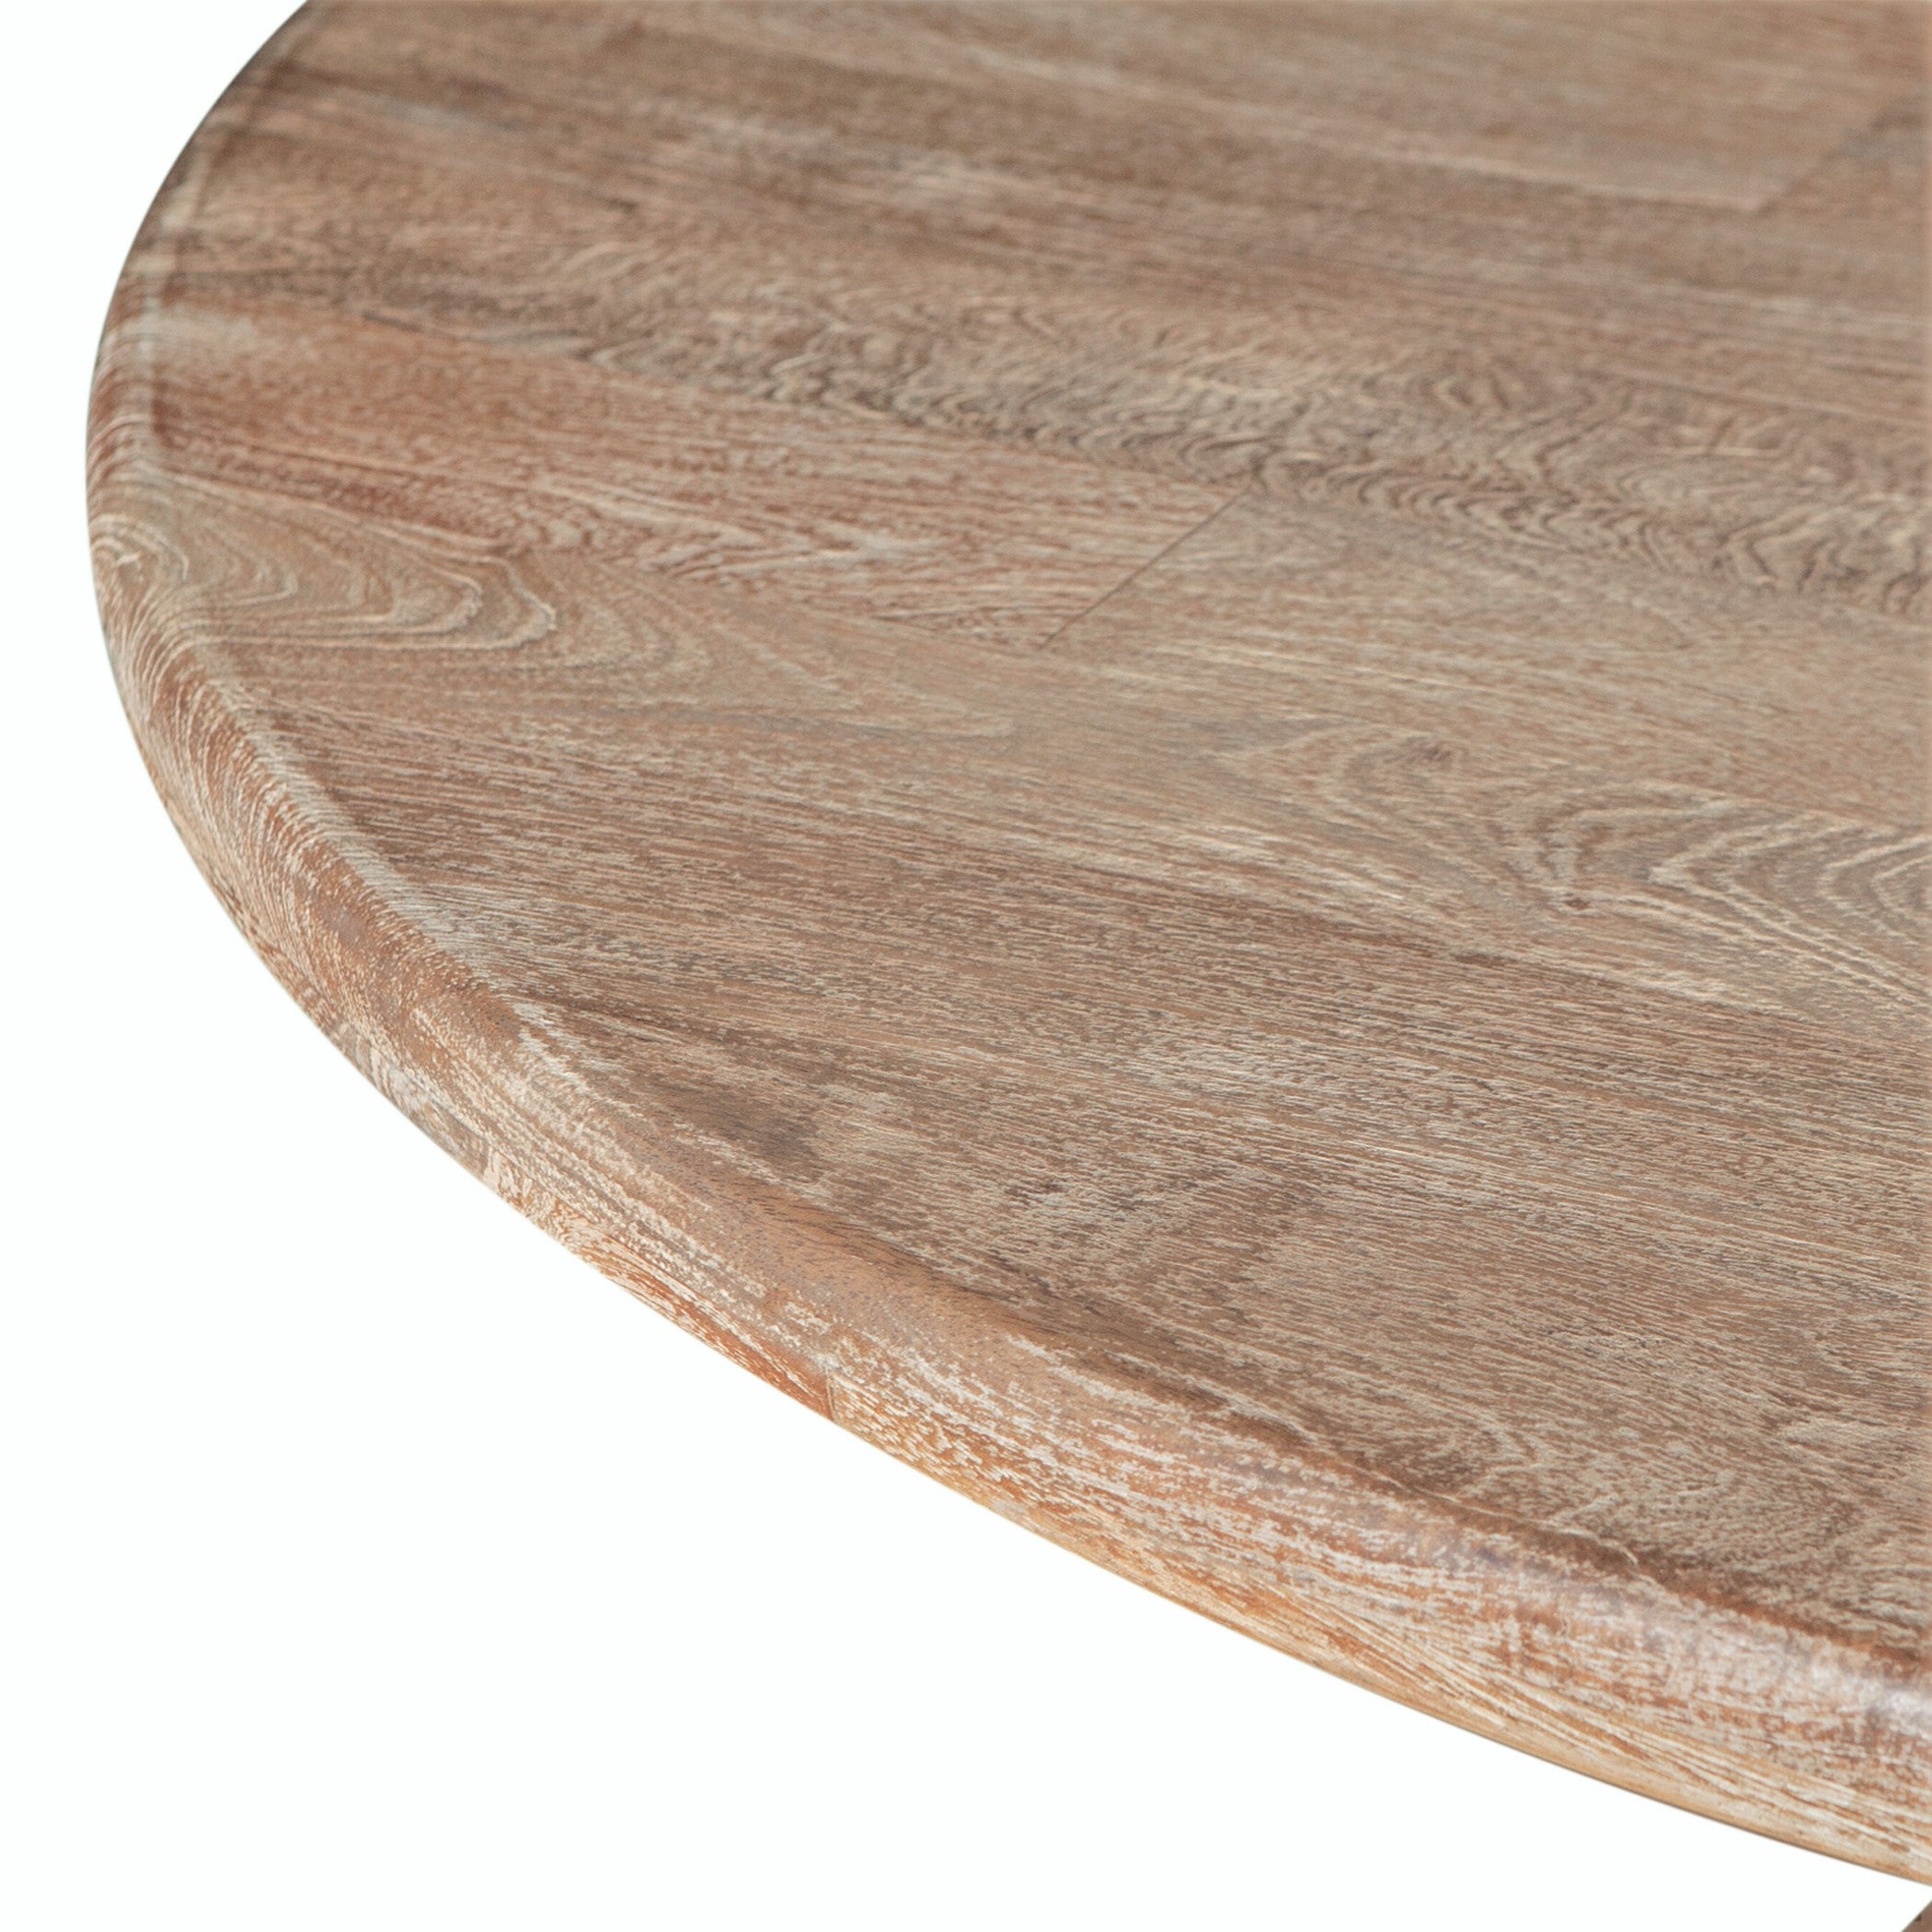 Pengrove Mango Wood Round Dining Table - Top Closeup